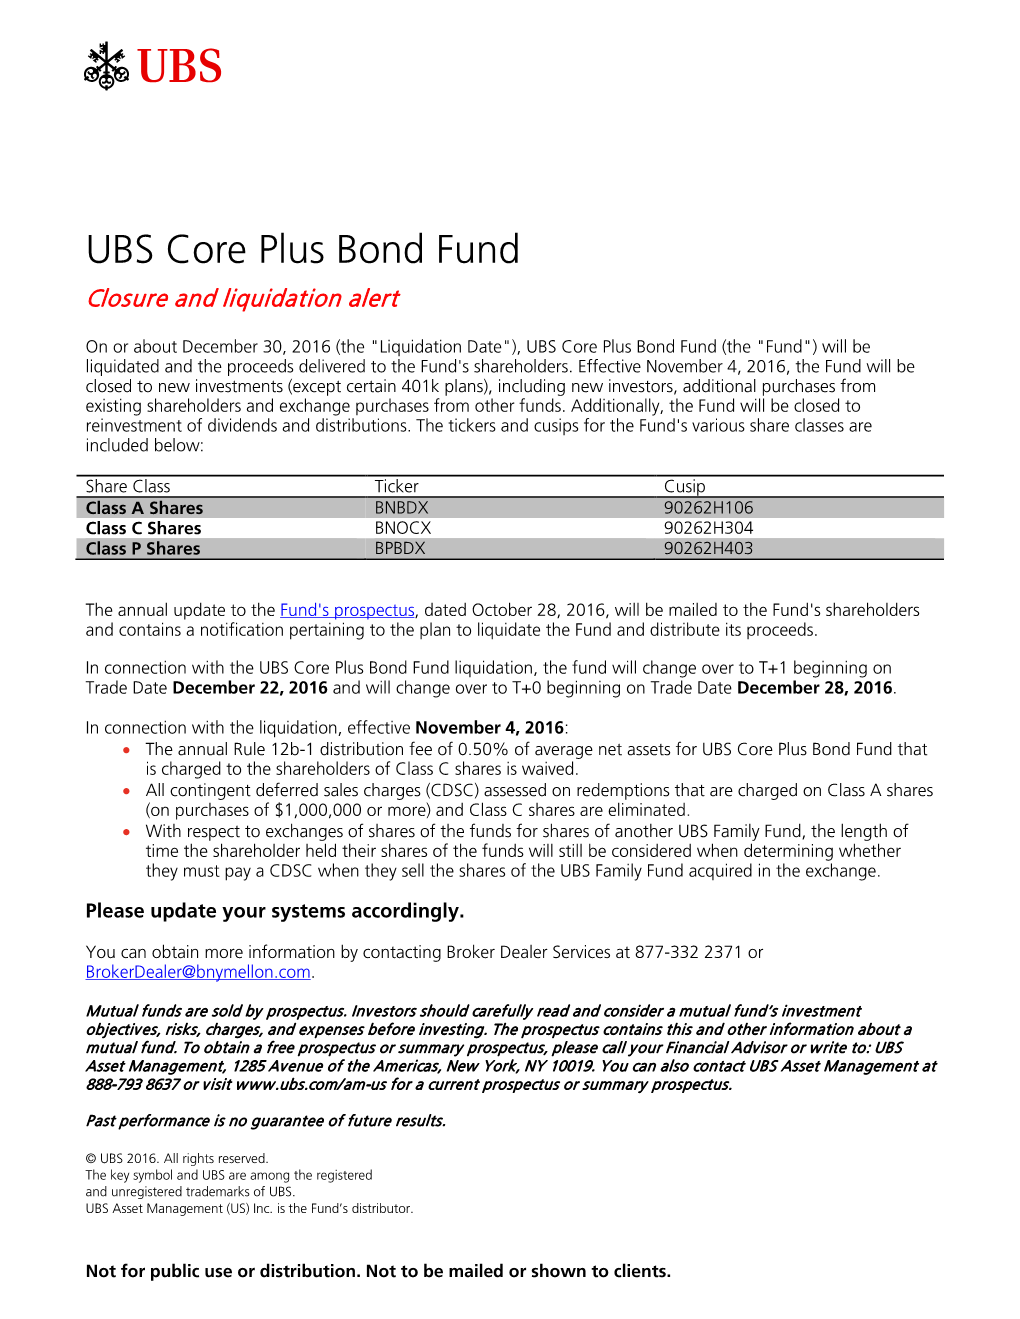 UBS Core Plus Bond Fund Closure and Liquidation Alert